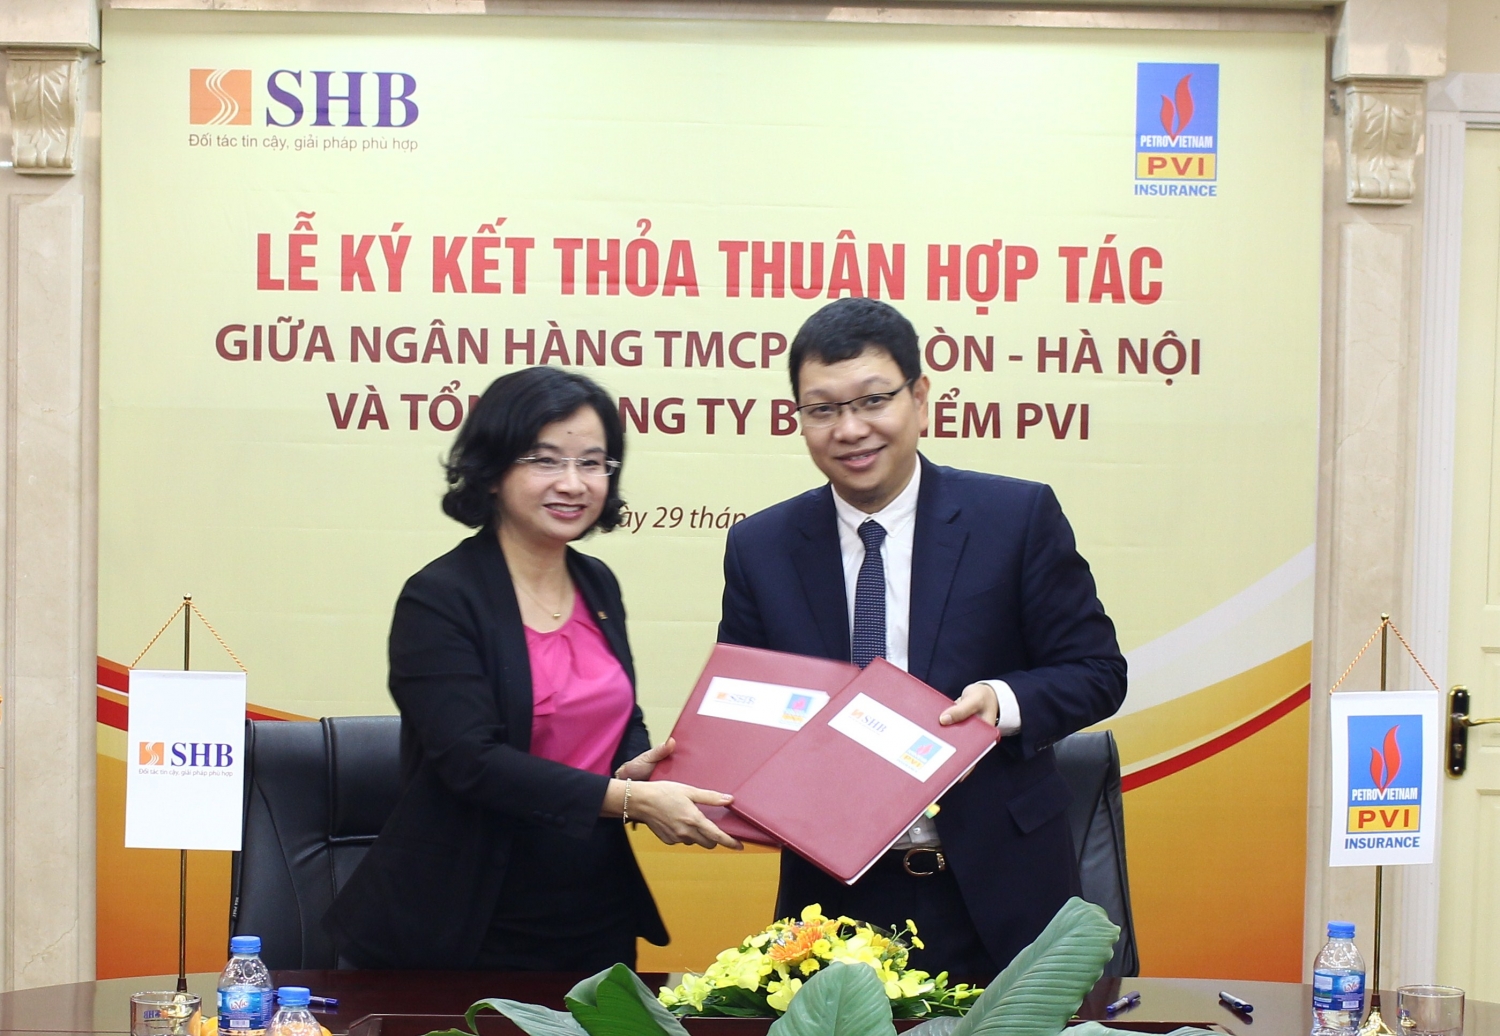 SHB và Bảo hiểm PVI ký kết hợp tác chiến lược toàn diện